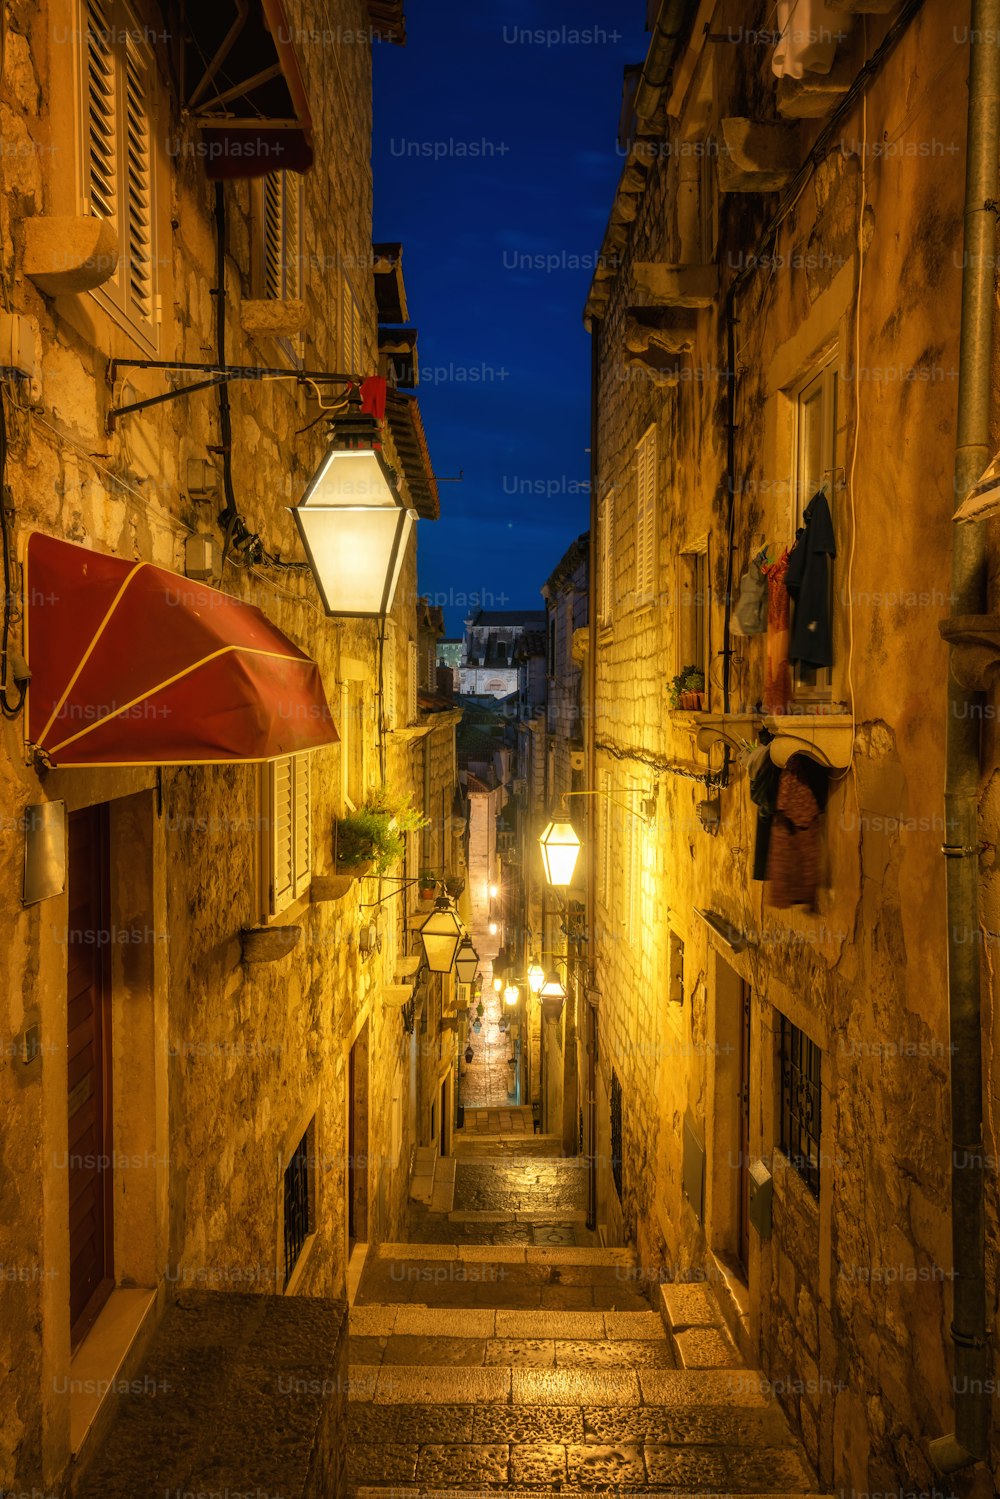 Célèbre ruelle étroite de la vieille ville de Dubrovnik en Croatie la nuit - Destination de voyage de premier plan de la Croatie. La vieille ville de Dubrovnik a été classée au patrimoine mondial de l’UNESCO en 1979.